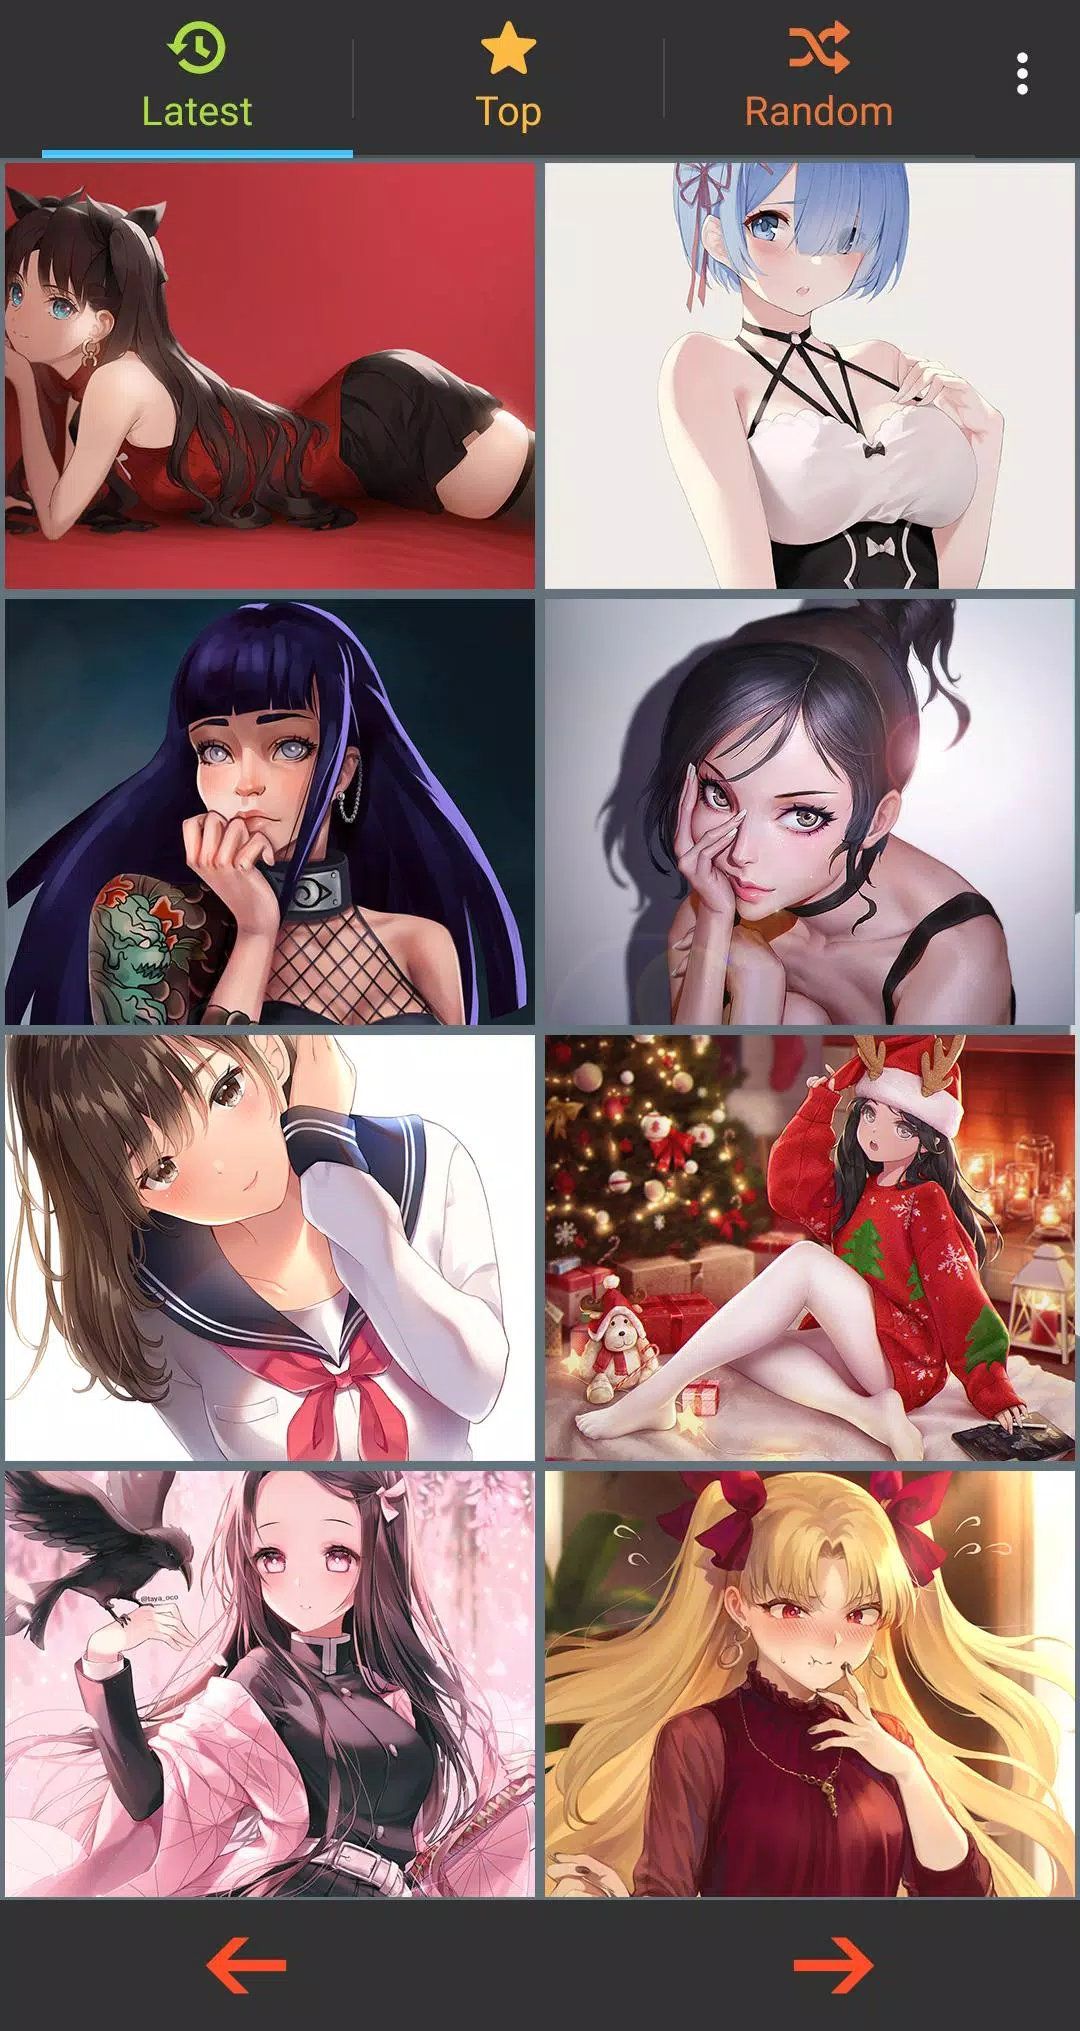 Sexy Photos Of Anime